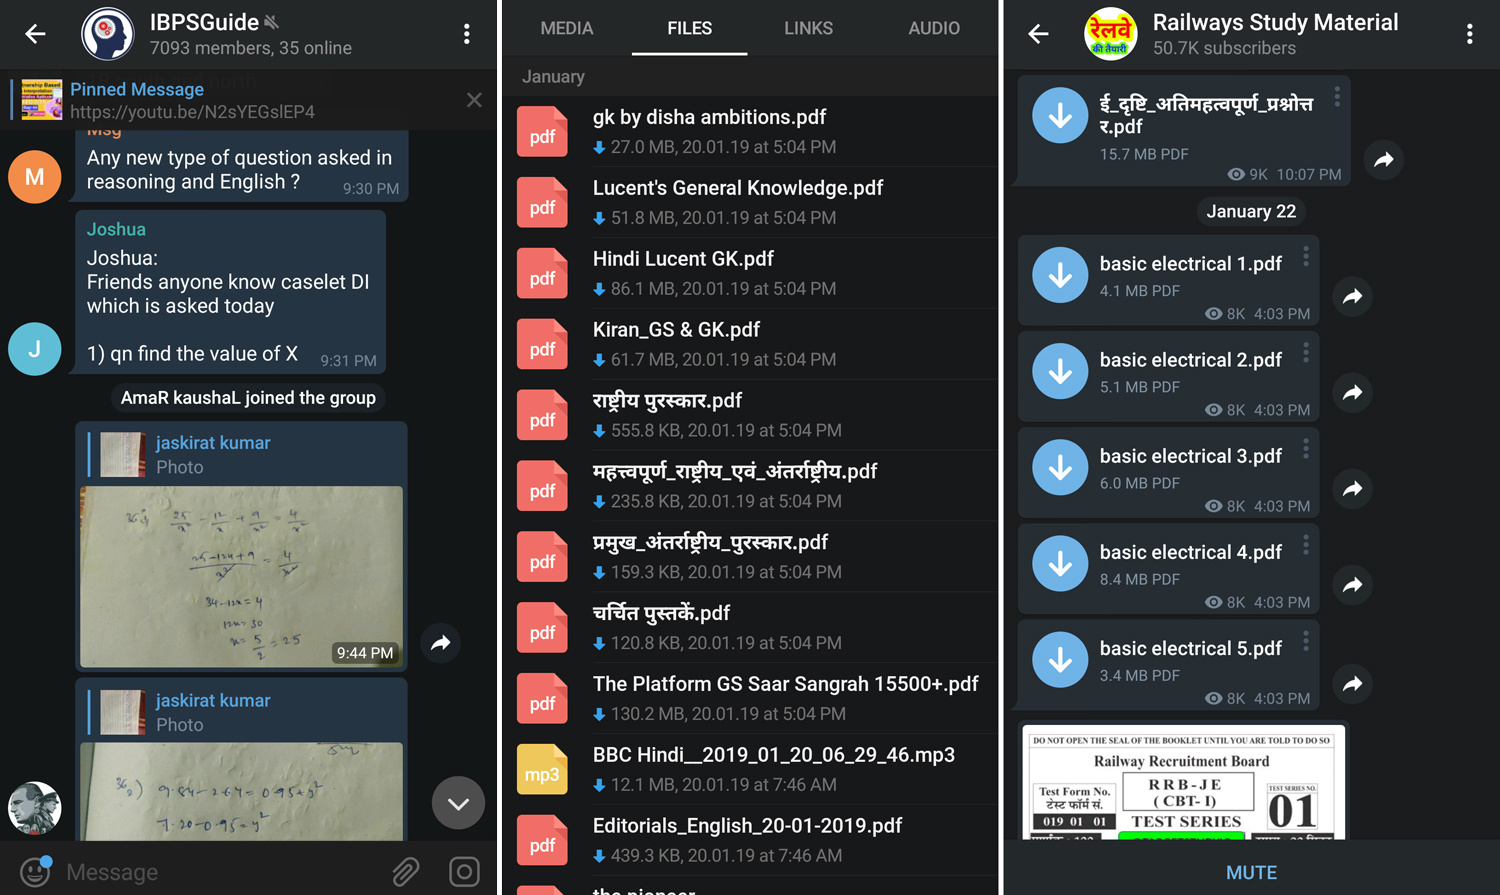 “加密版微信”Telegram在印度怎么变成了首选备考平台？教育类公司又是怎么利用它的？